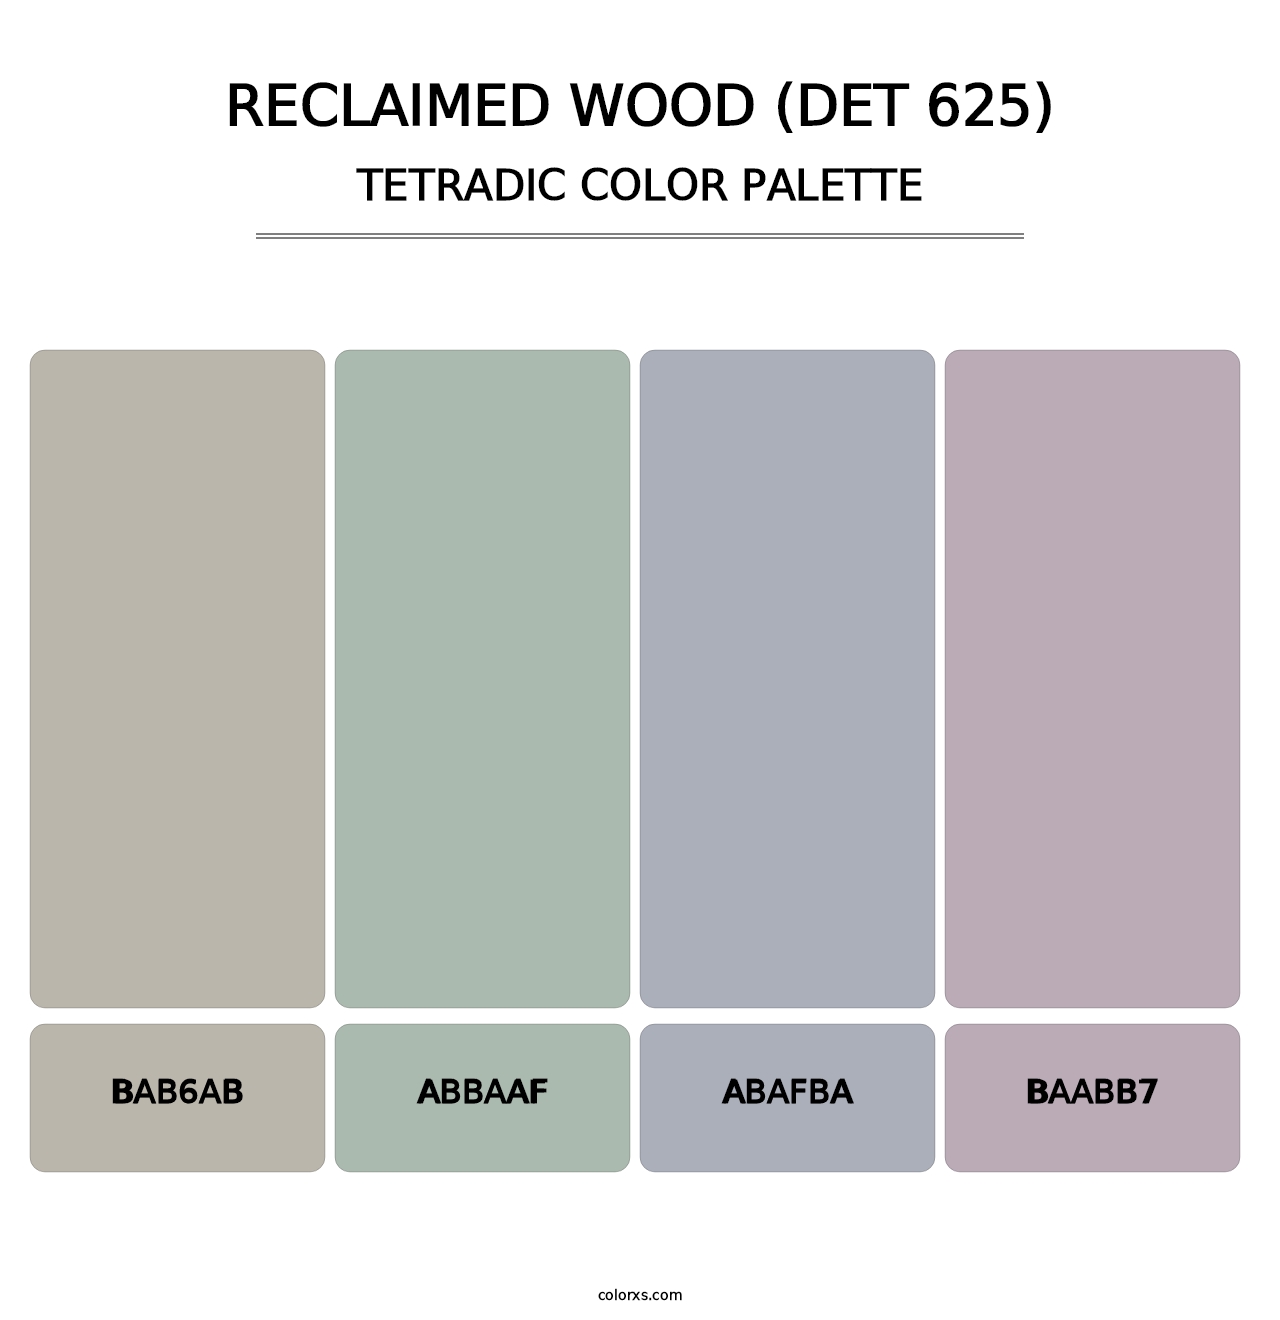 Reclaimed Wood (DET 625) - Tetradic Color Palette